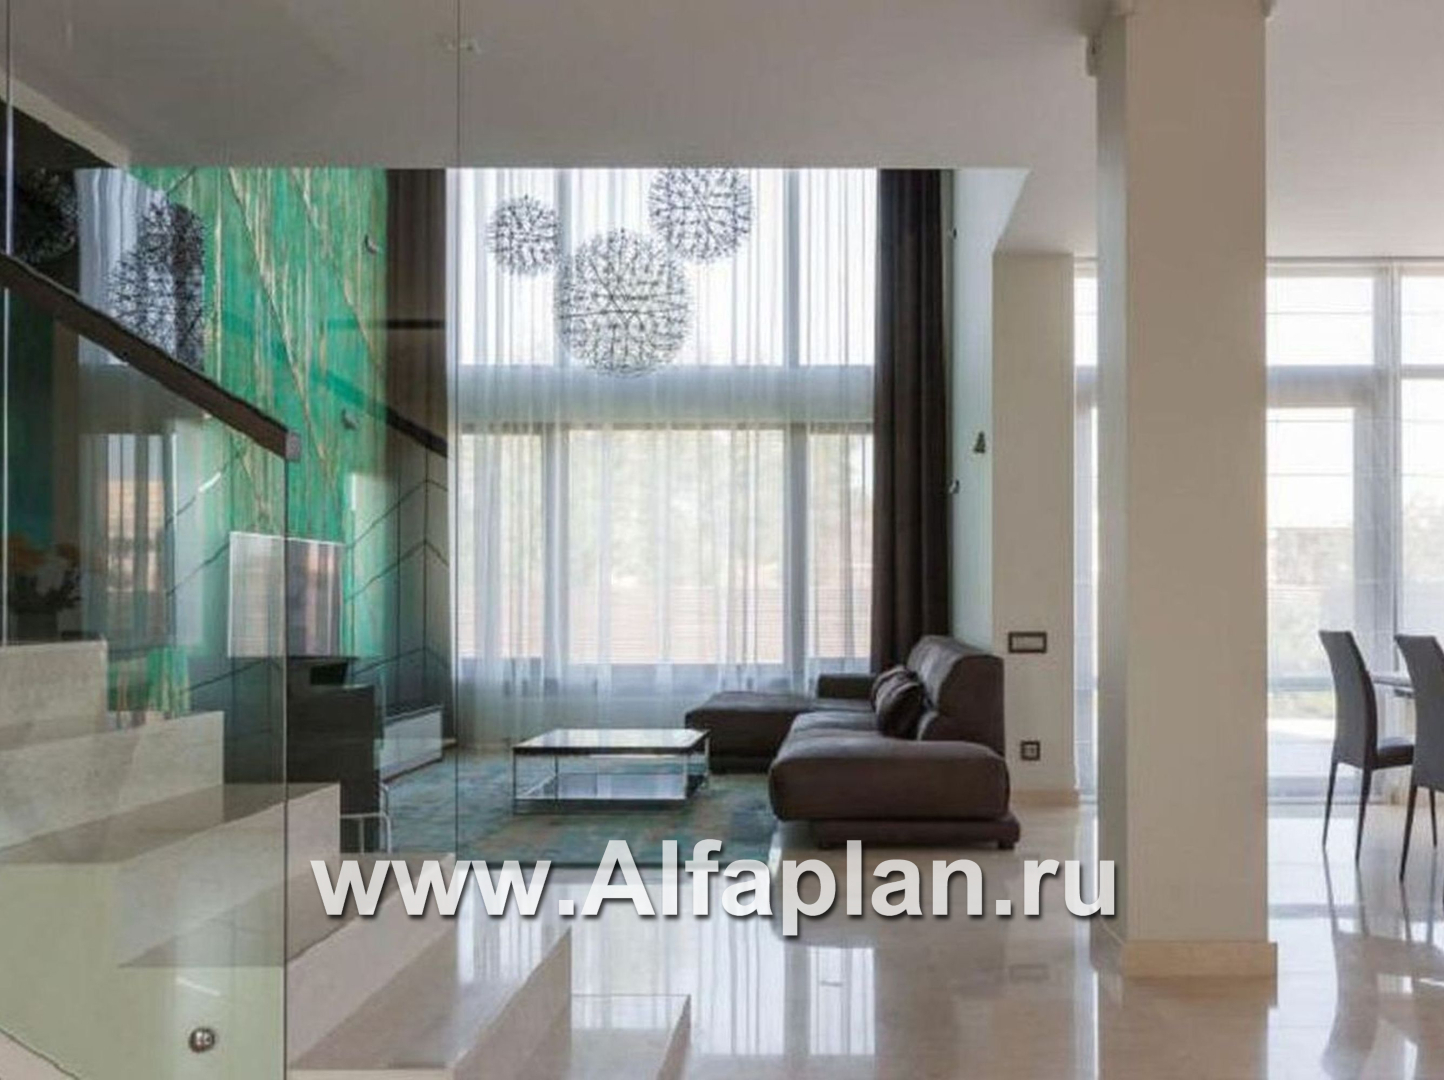 Проекты домов Альфаплан - «Современник» - коттедж с панорамными окнами - дополнительное изображение №1